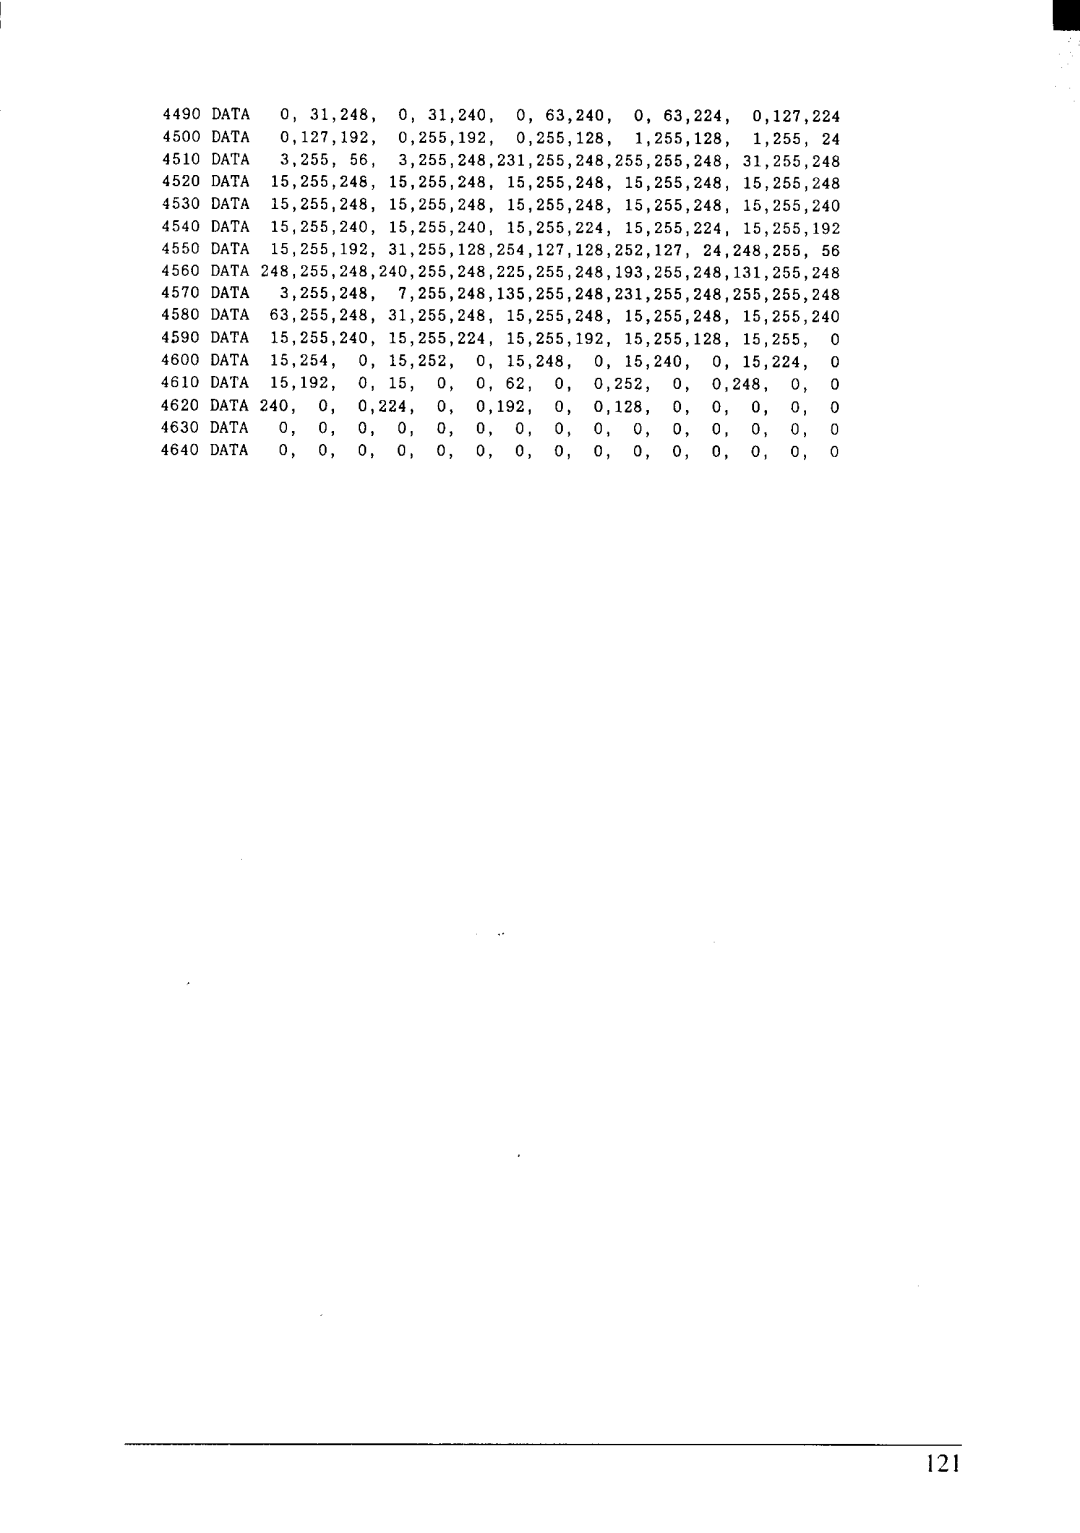 Star Micronics NX-2415II 4490, Data, O, 31,248, 0, 31,240, 0, 63,240, 0, 63,224, 0,127,224, 4500, 0,127,192, 0,255,192 